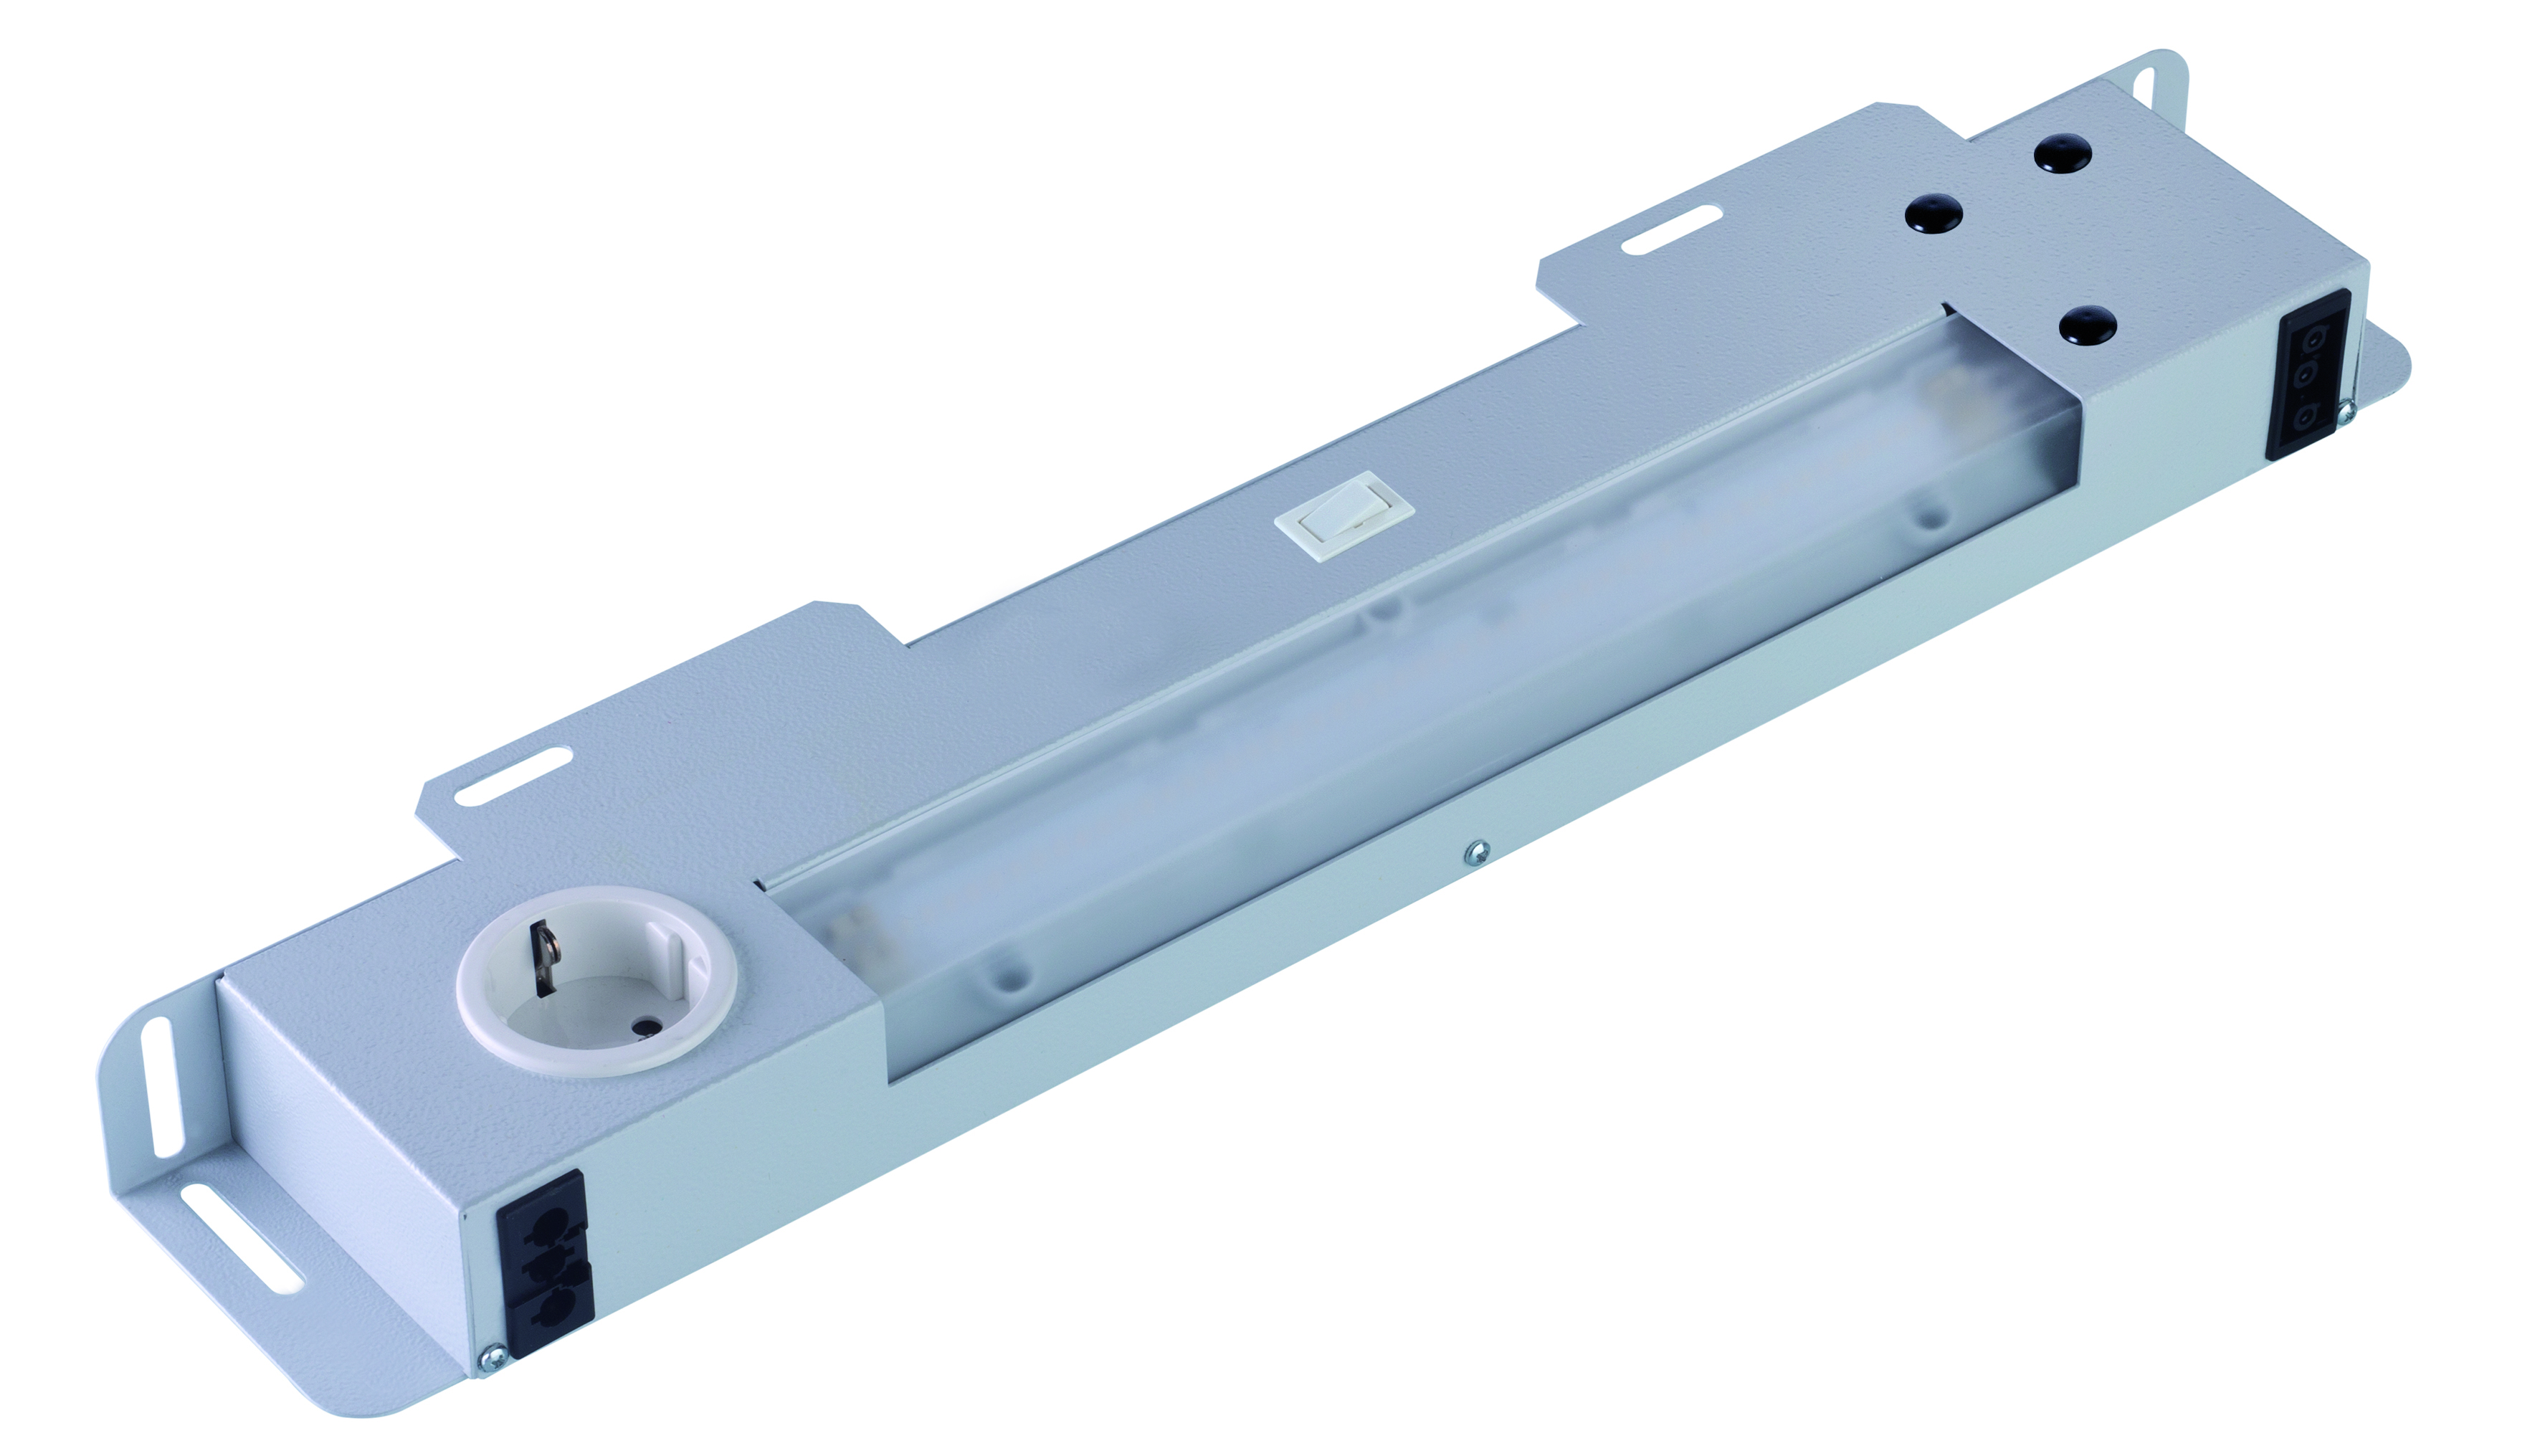 Abbildung LED-Normo-Lux 11 Watt, 220-240 Volt/50-60 Hz | ab 600mm Schrankbreite